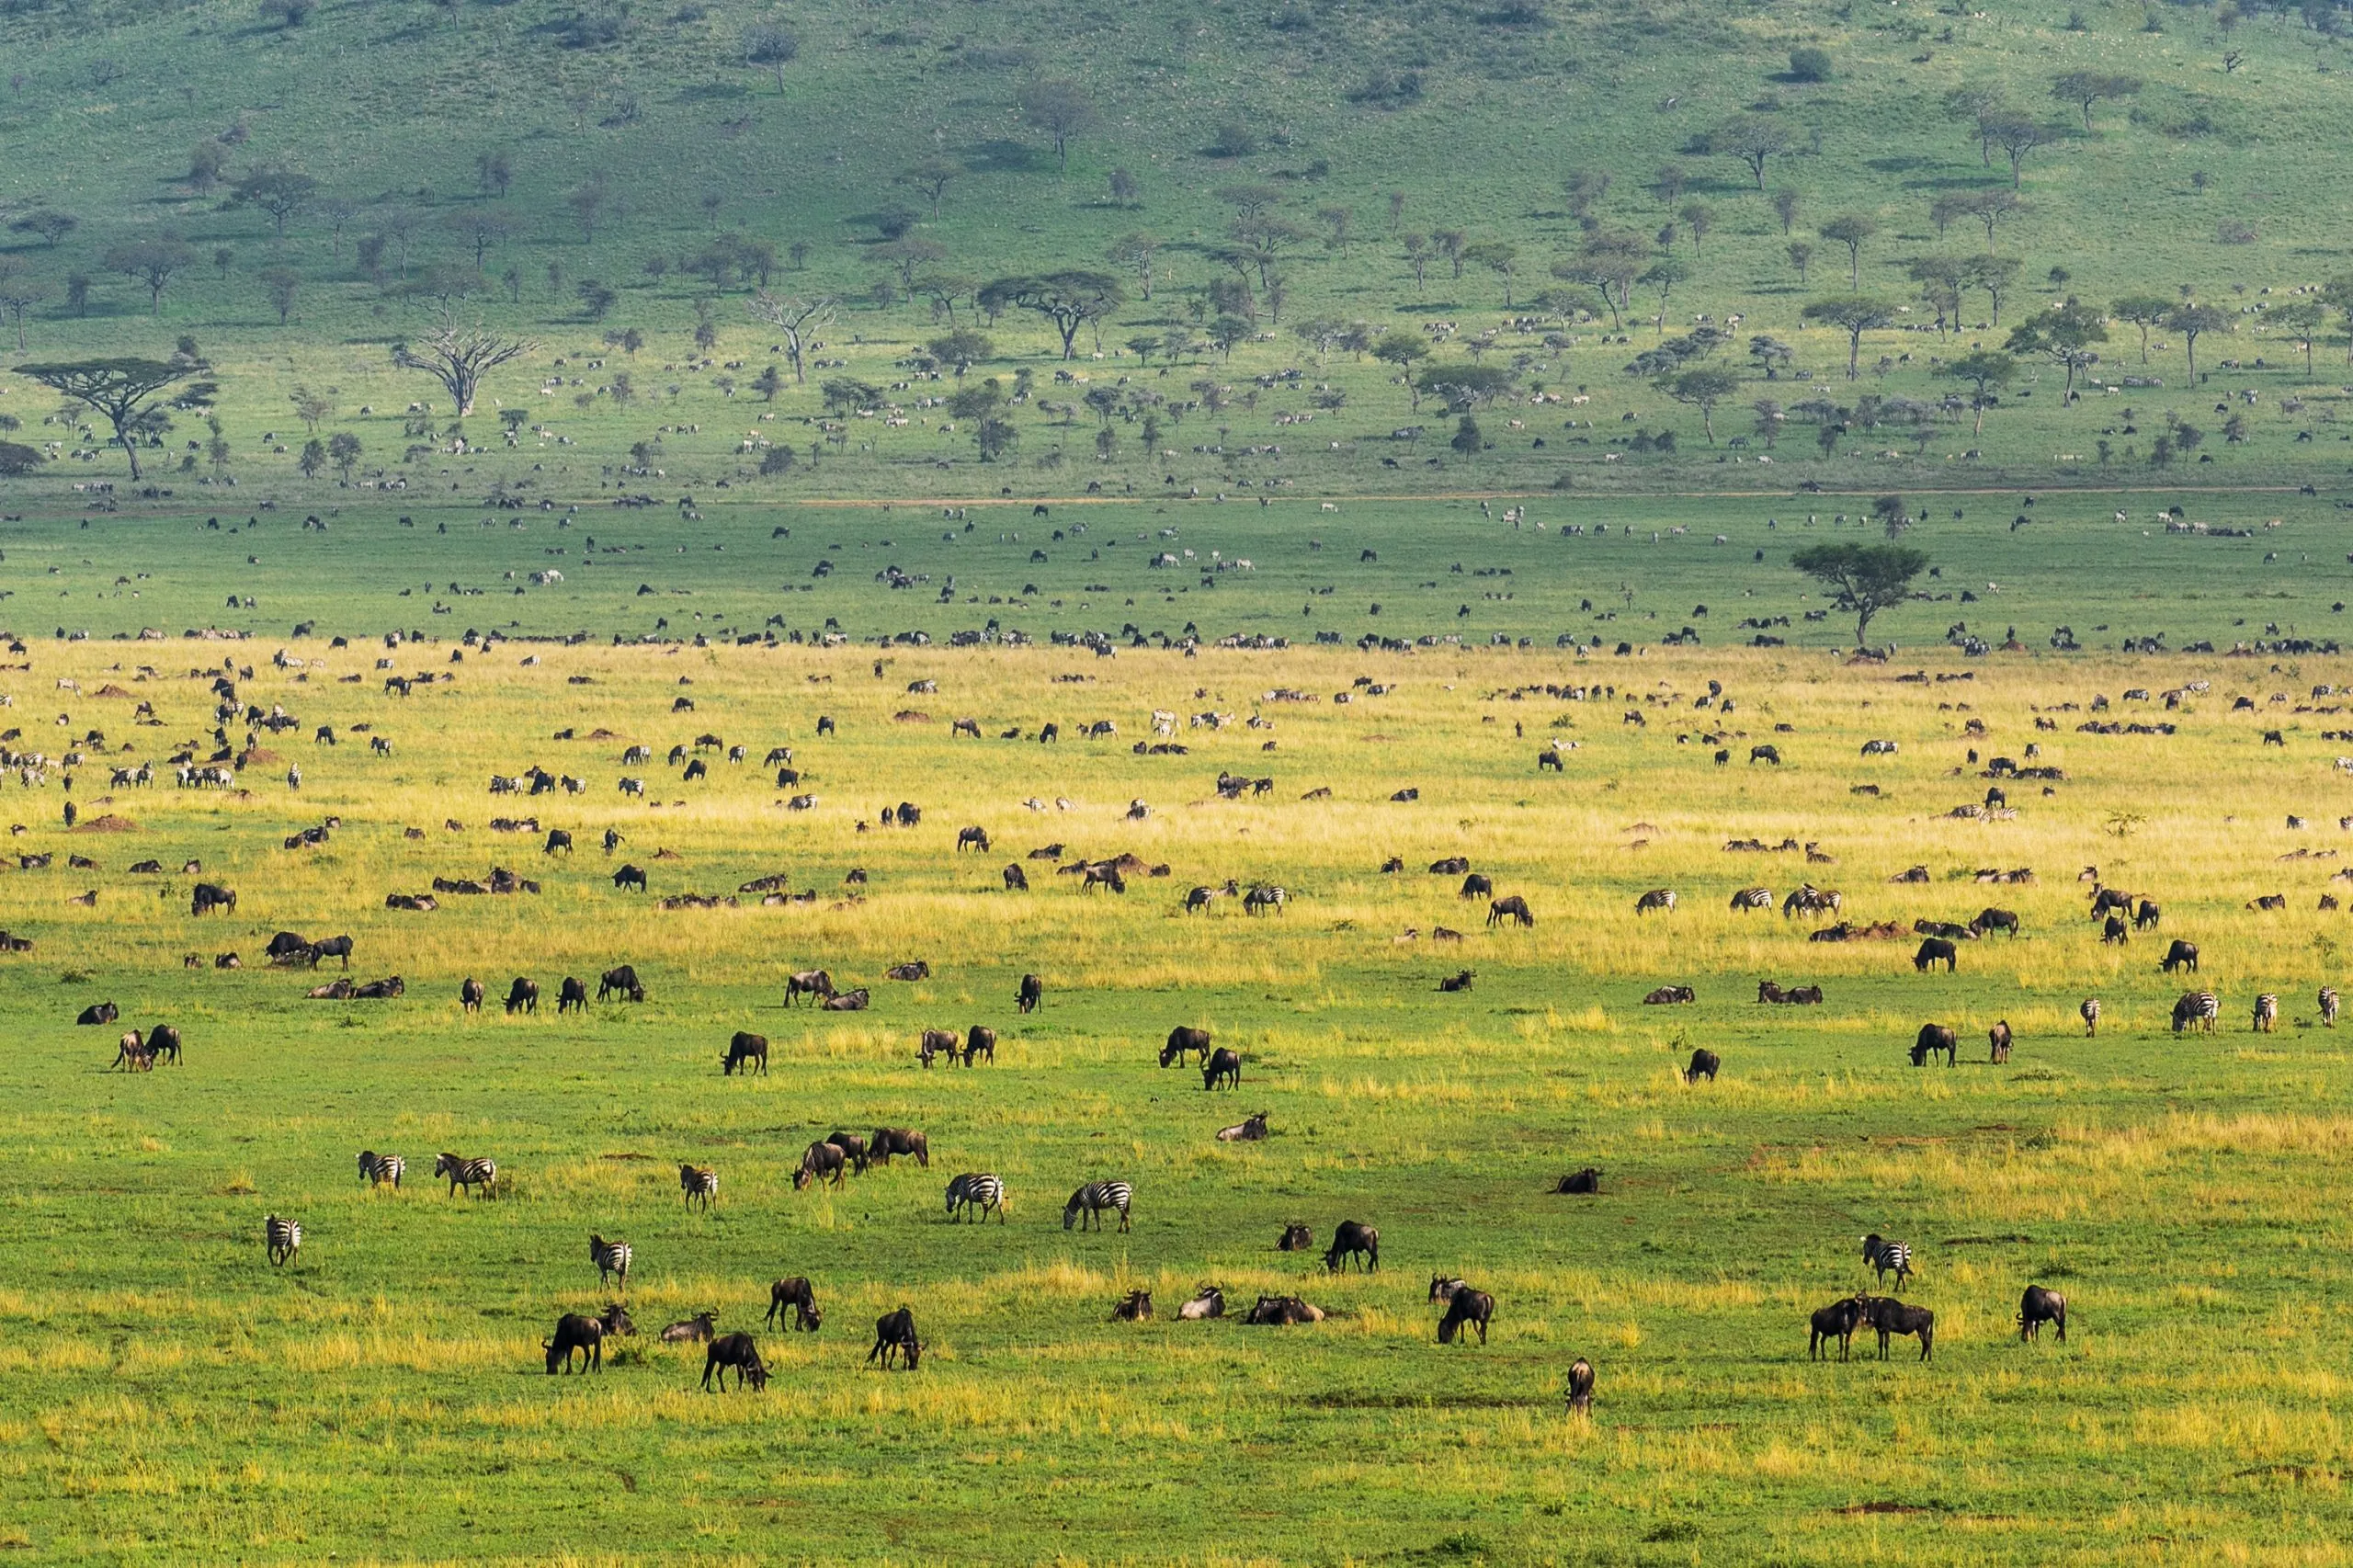 Paisagem do parque nacional Serengeti repleta de animais